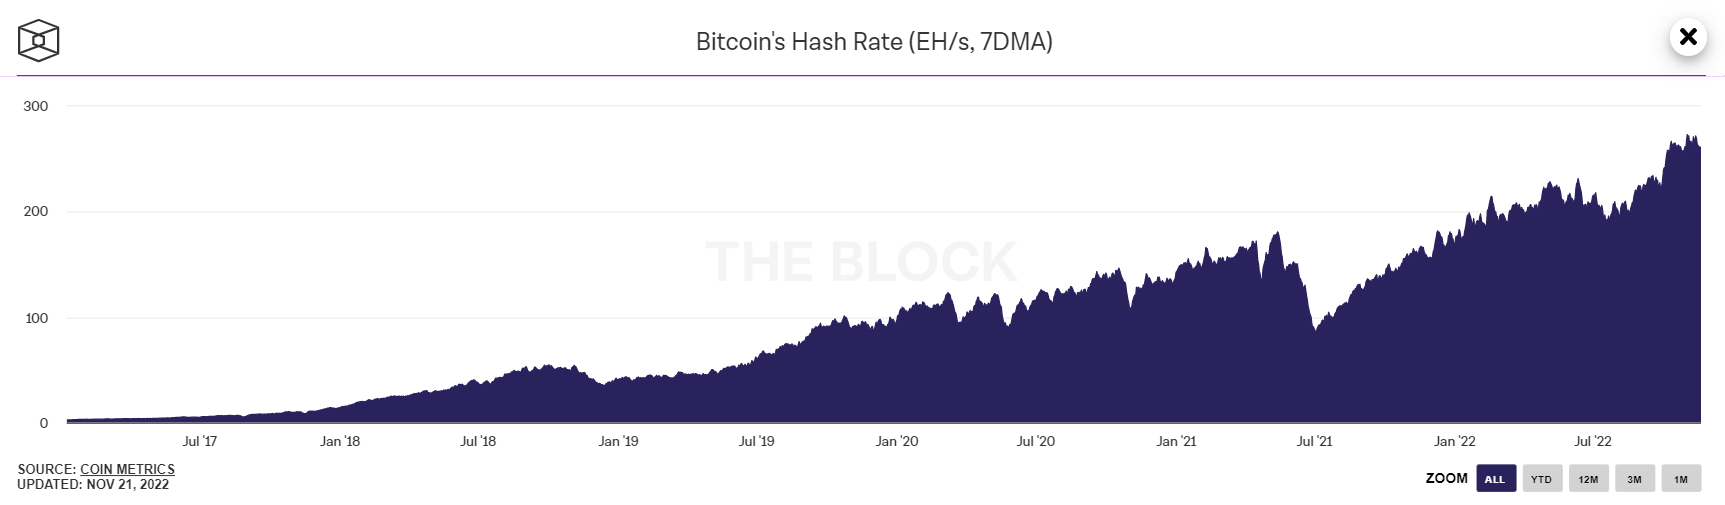 Độ khó khai thác Bitcoin tăng nhẹ bất chấp sự hỗn loạn của thị trường